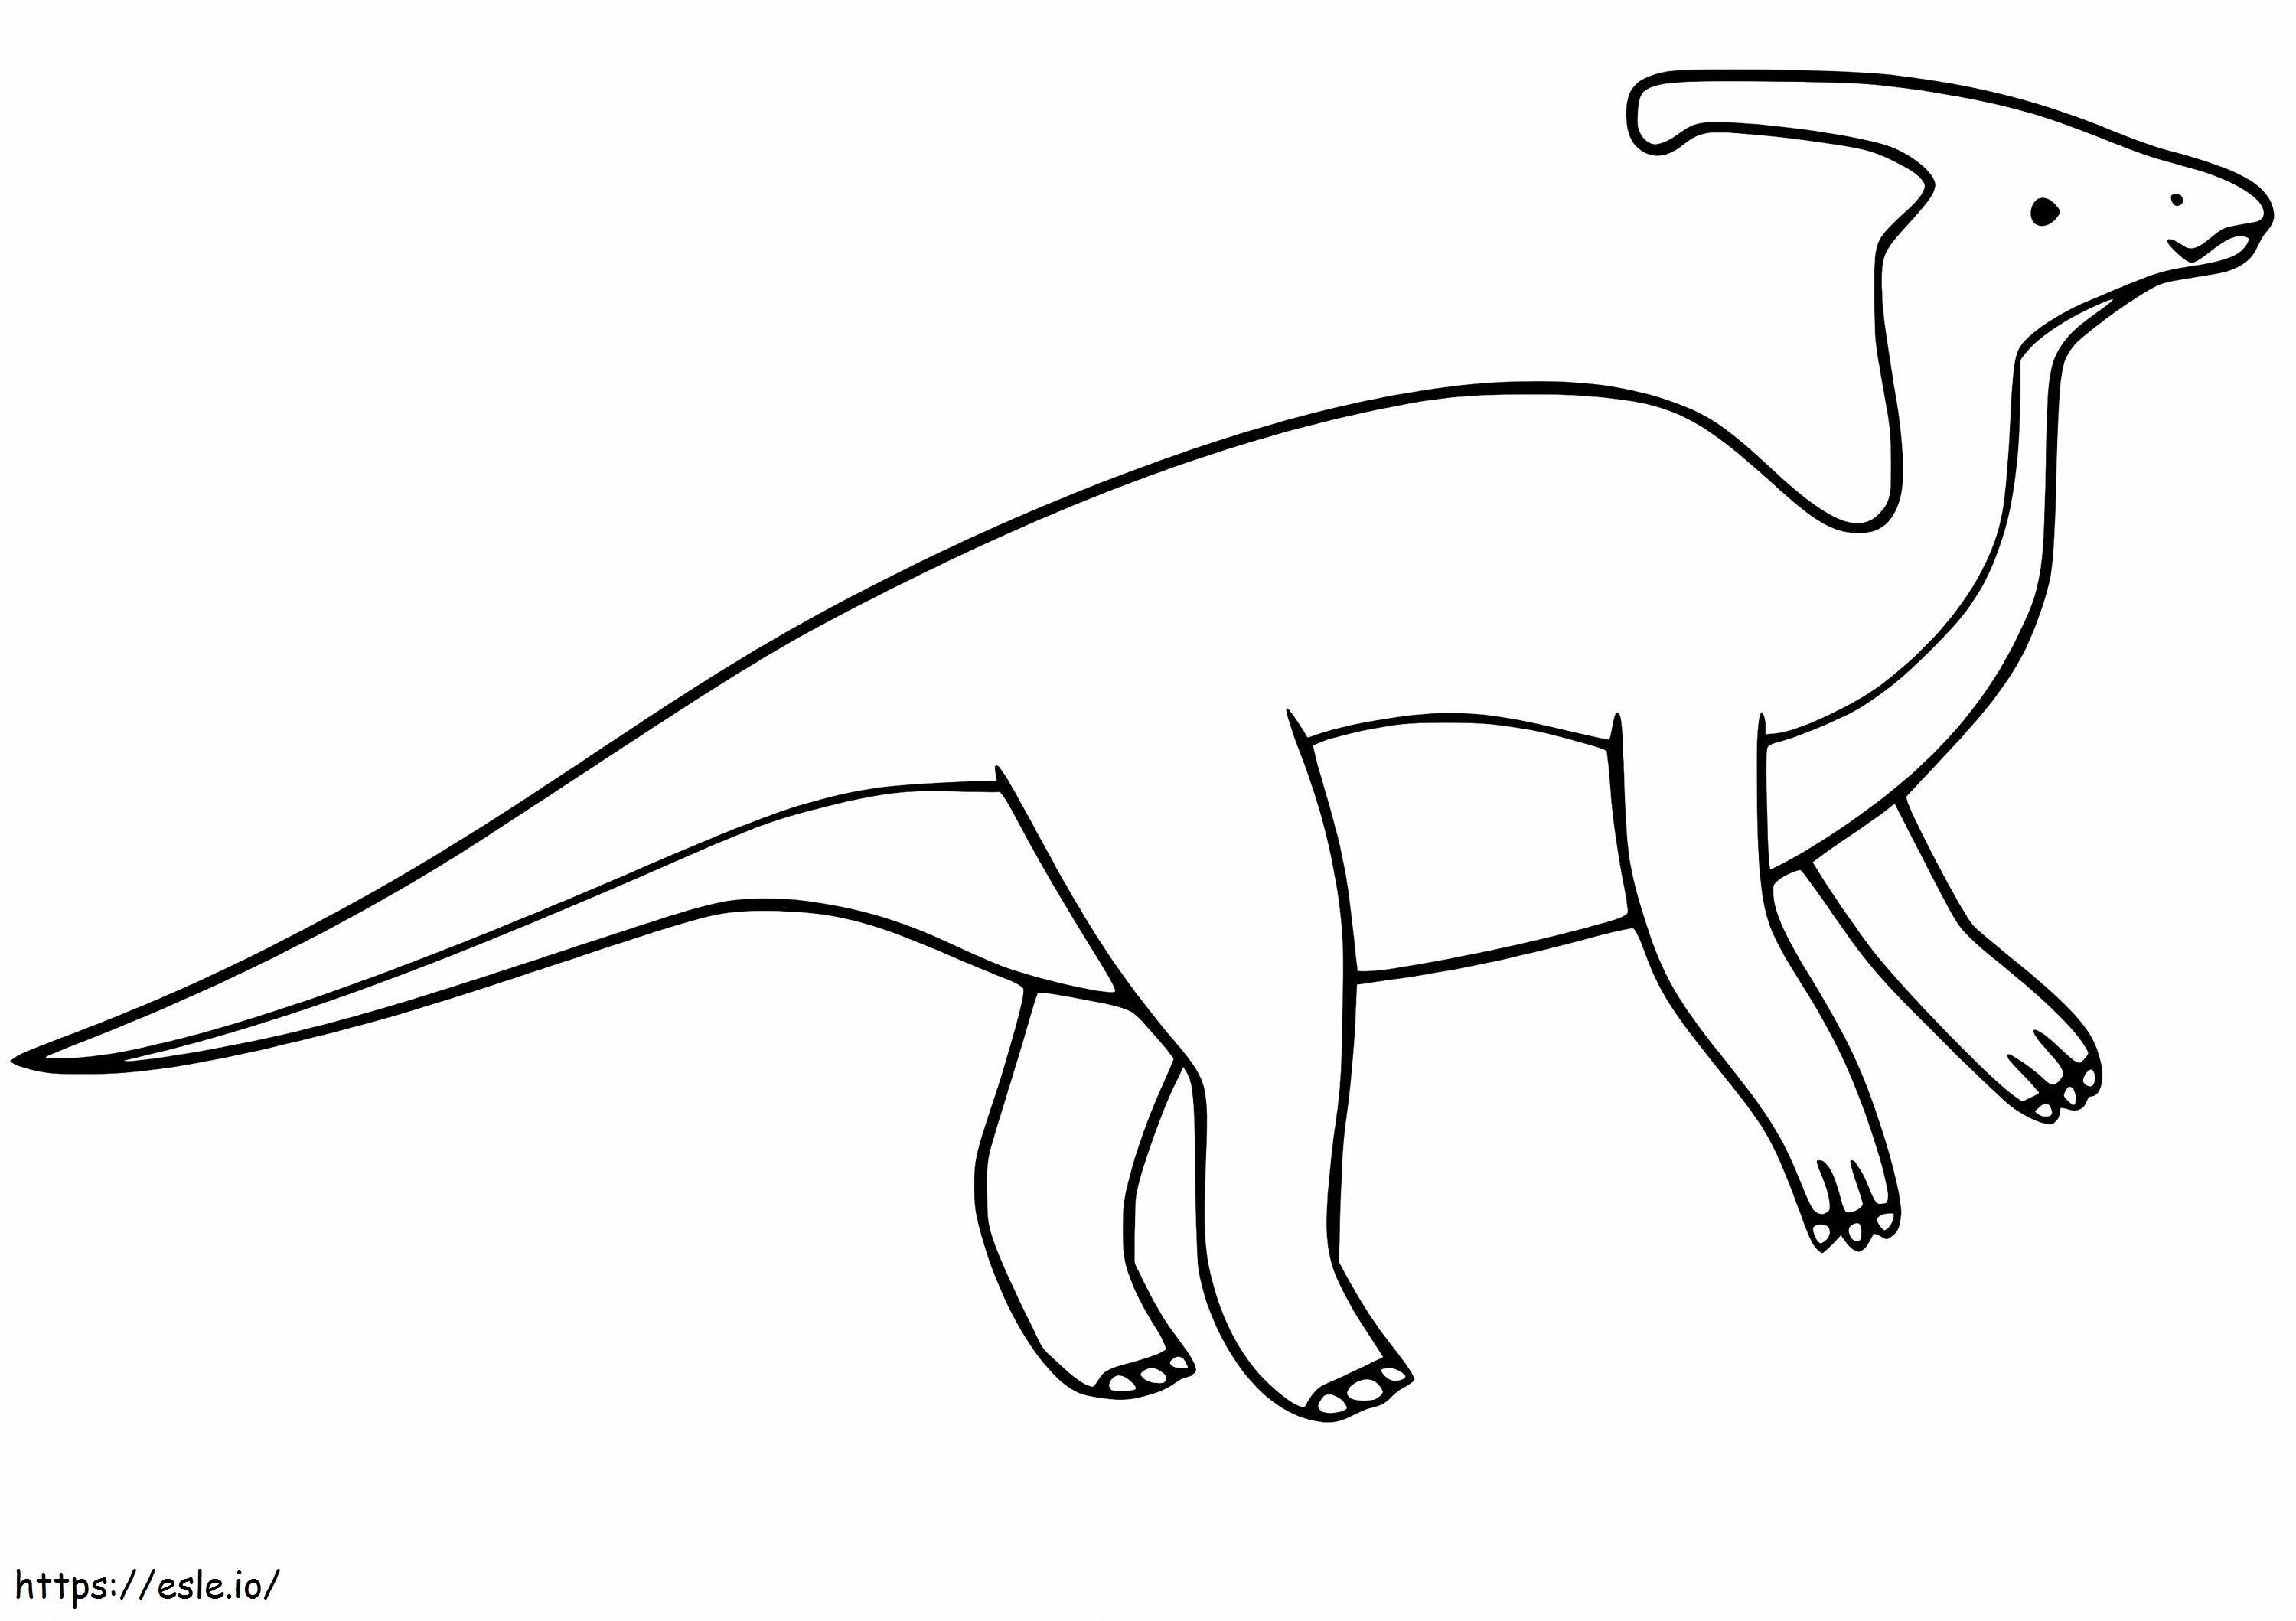 Basit Parasaurolophus boyama